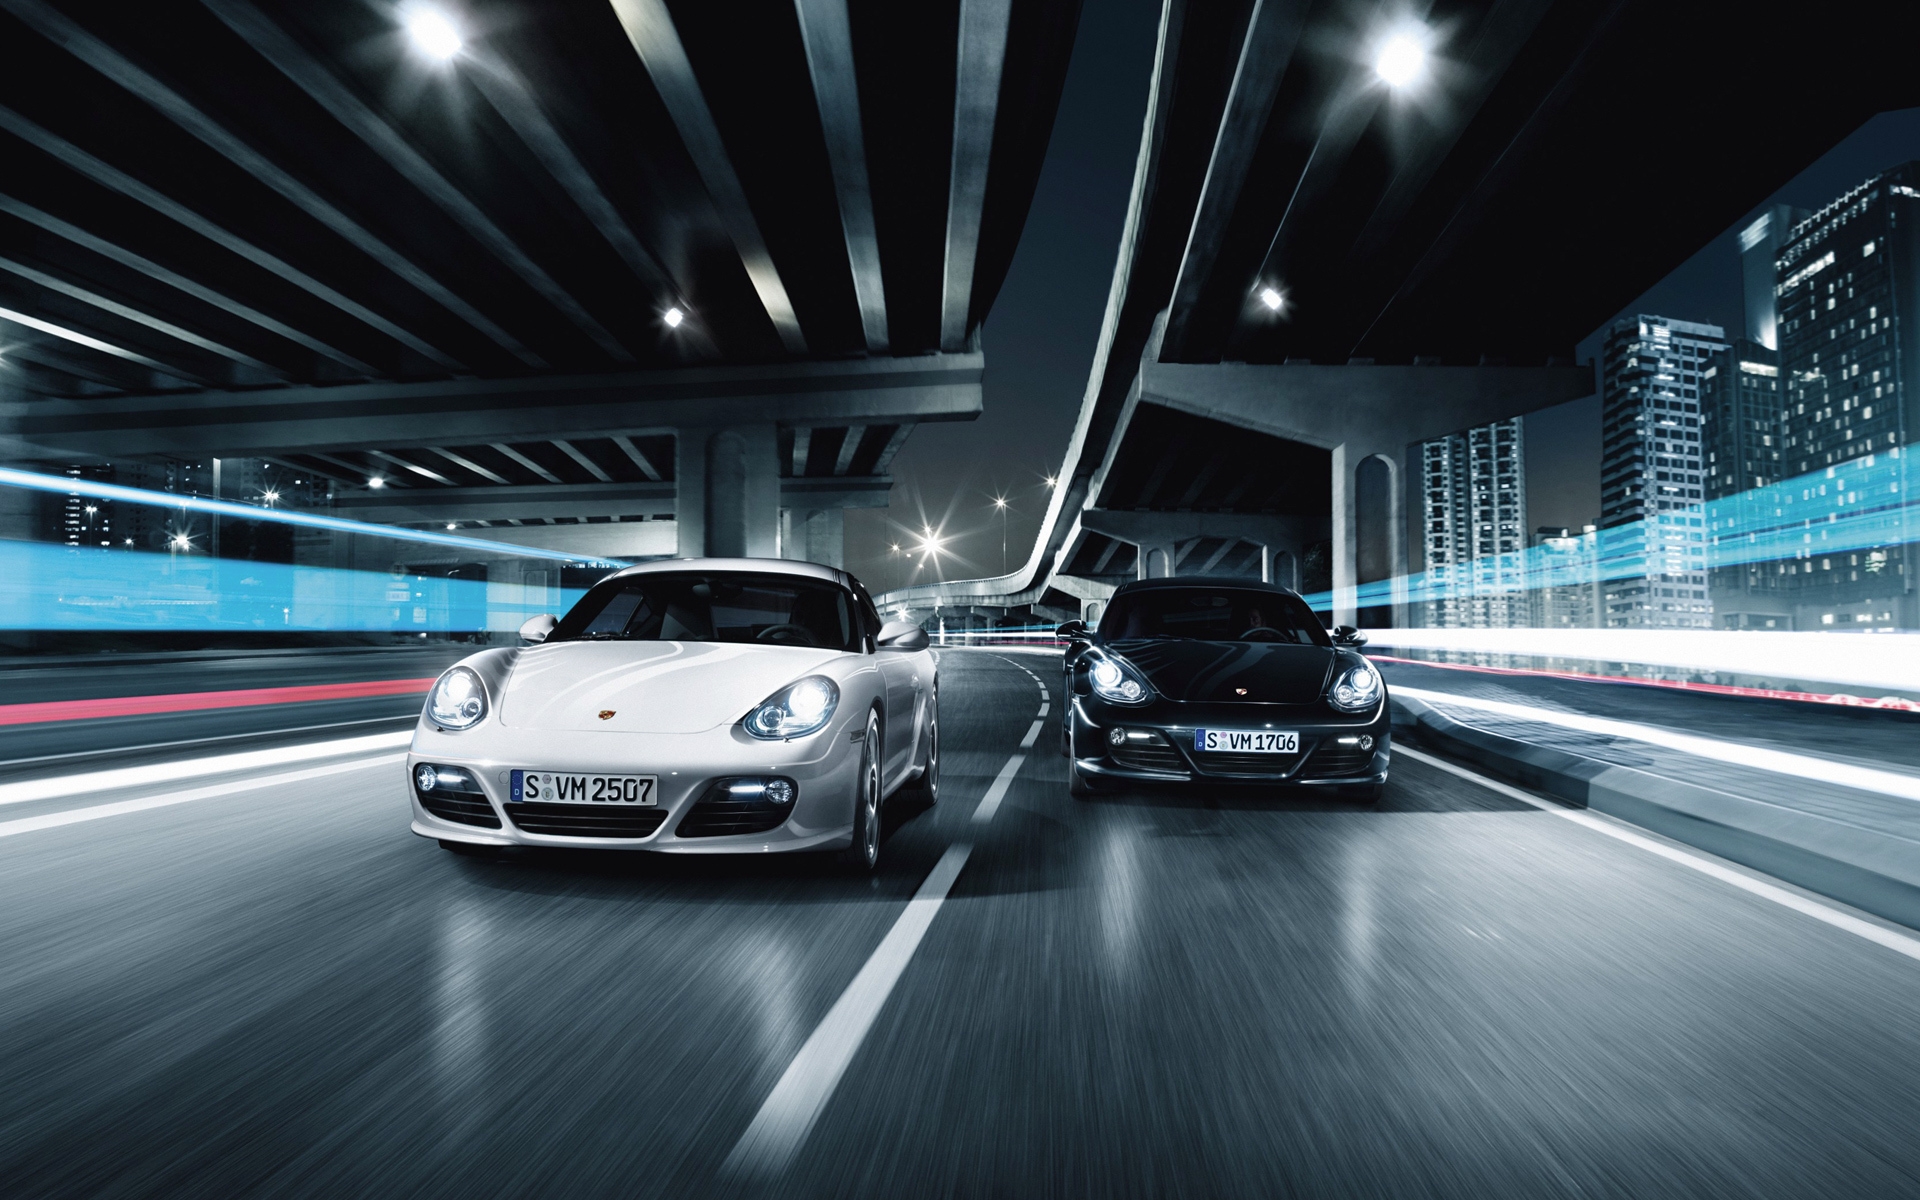 Porsche 911 GT2 Race for 1920 x 1200 widescreen resolution